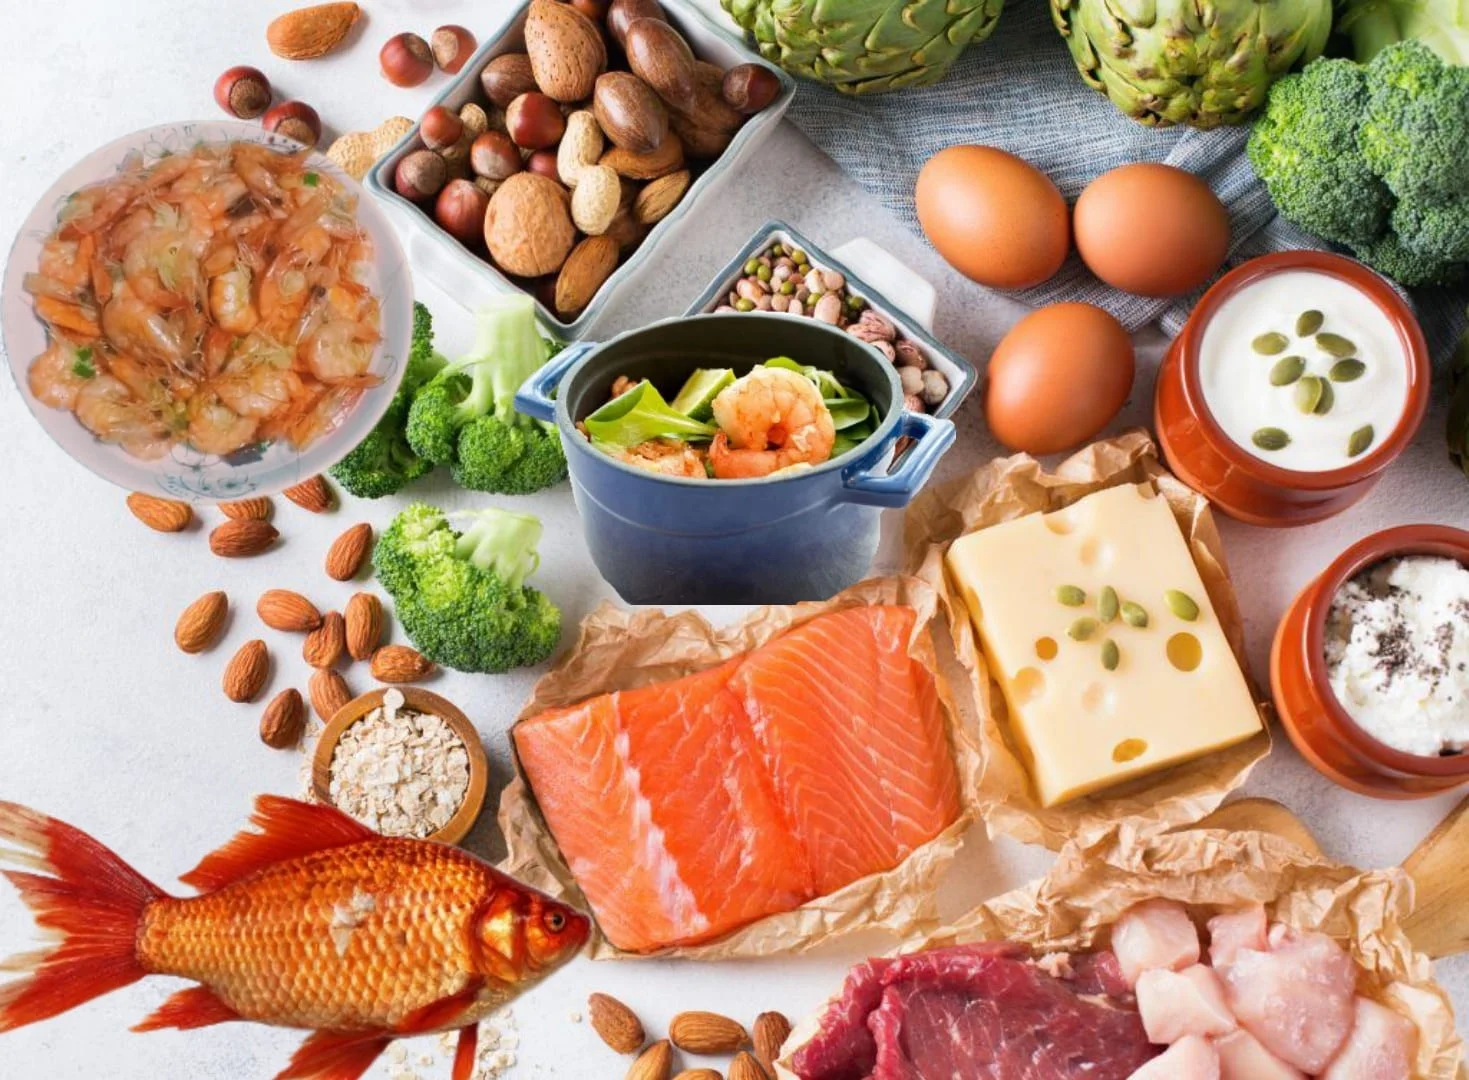 يعد البروتين عنصرًا غذائيًا أساسيًا ، ولكن ليست كل مصادر البروتين الغذائية متساوية ، وقد لا تحتاج إلى الكثير كما تعتقد. تعلم أساسيات البروتين وتشكيل نظامك الغذائي بأطعمة بروتينية صحية.